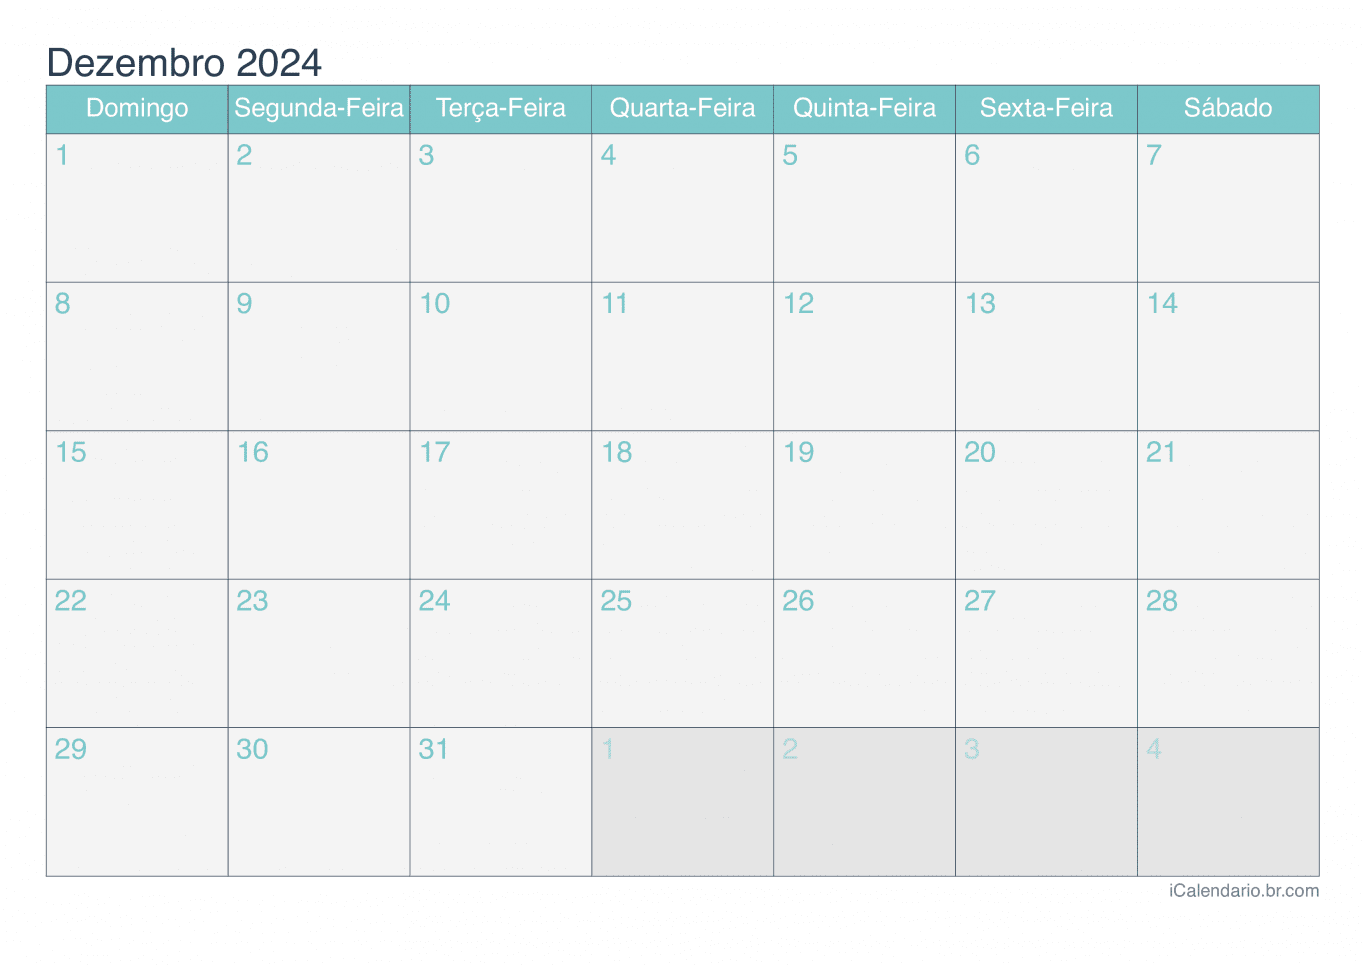 Calendário de dezembro 2024 - Turquesa